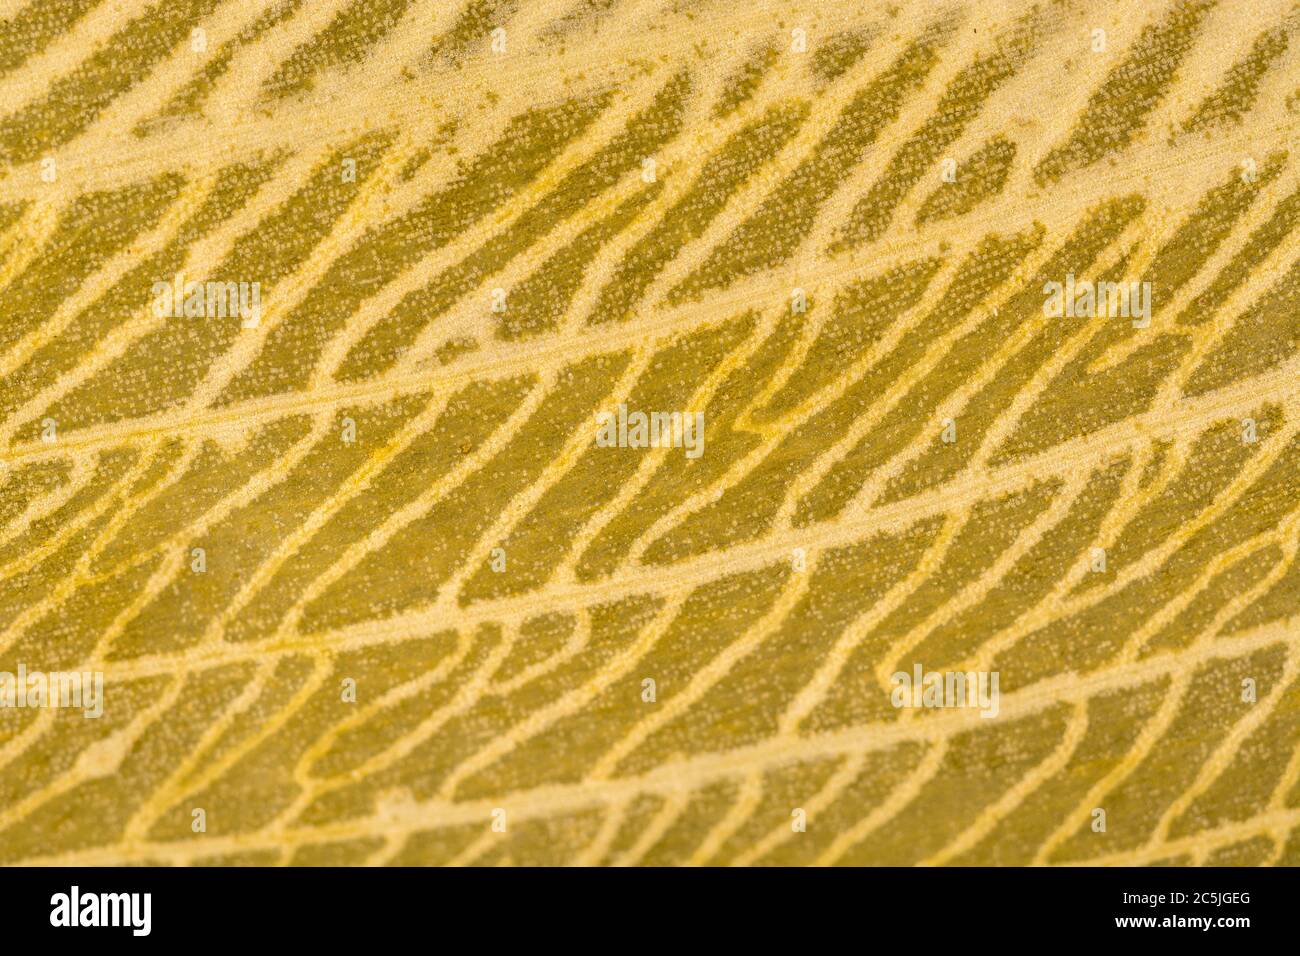 Gros plan extrême de la feuille d'Allium ursinum / Ramsons en décomposition, en décomposition, montrant des détails complexes de la structure de la veine morte. Décomposition de la matière foliaire. Banque D'Images